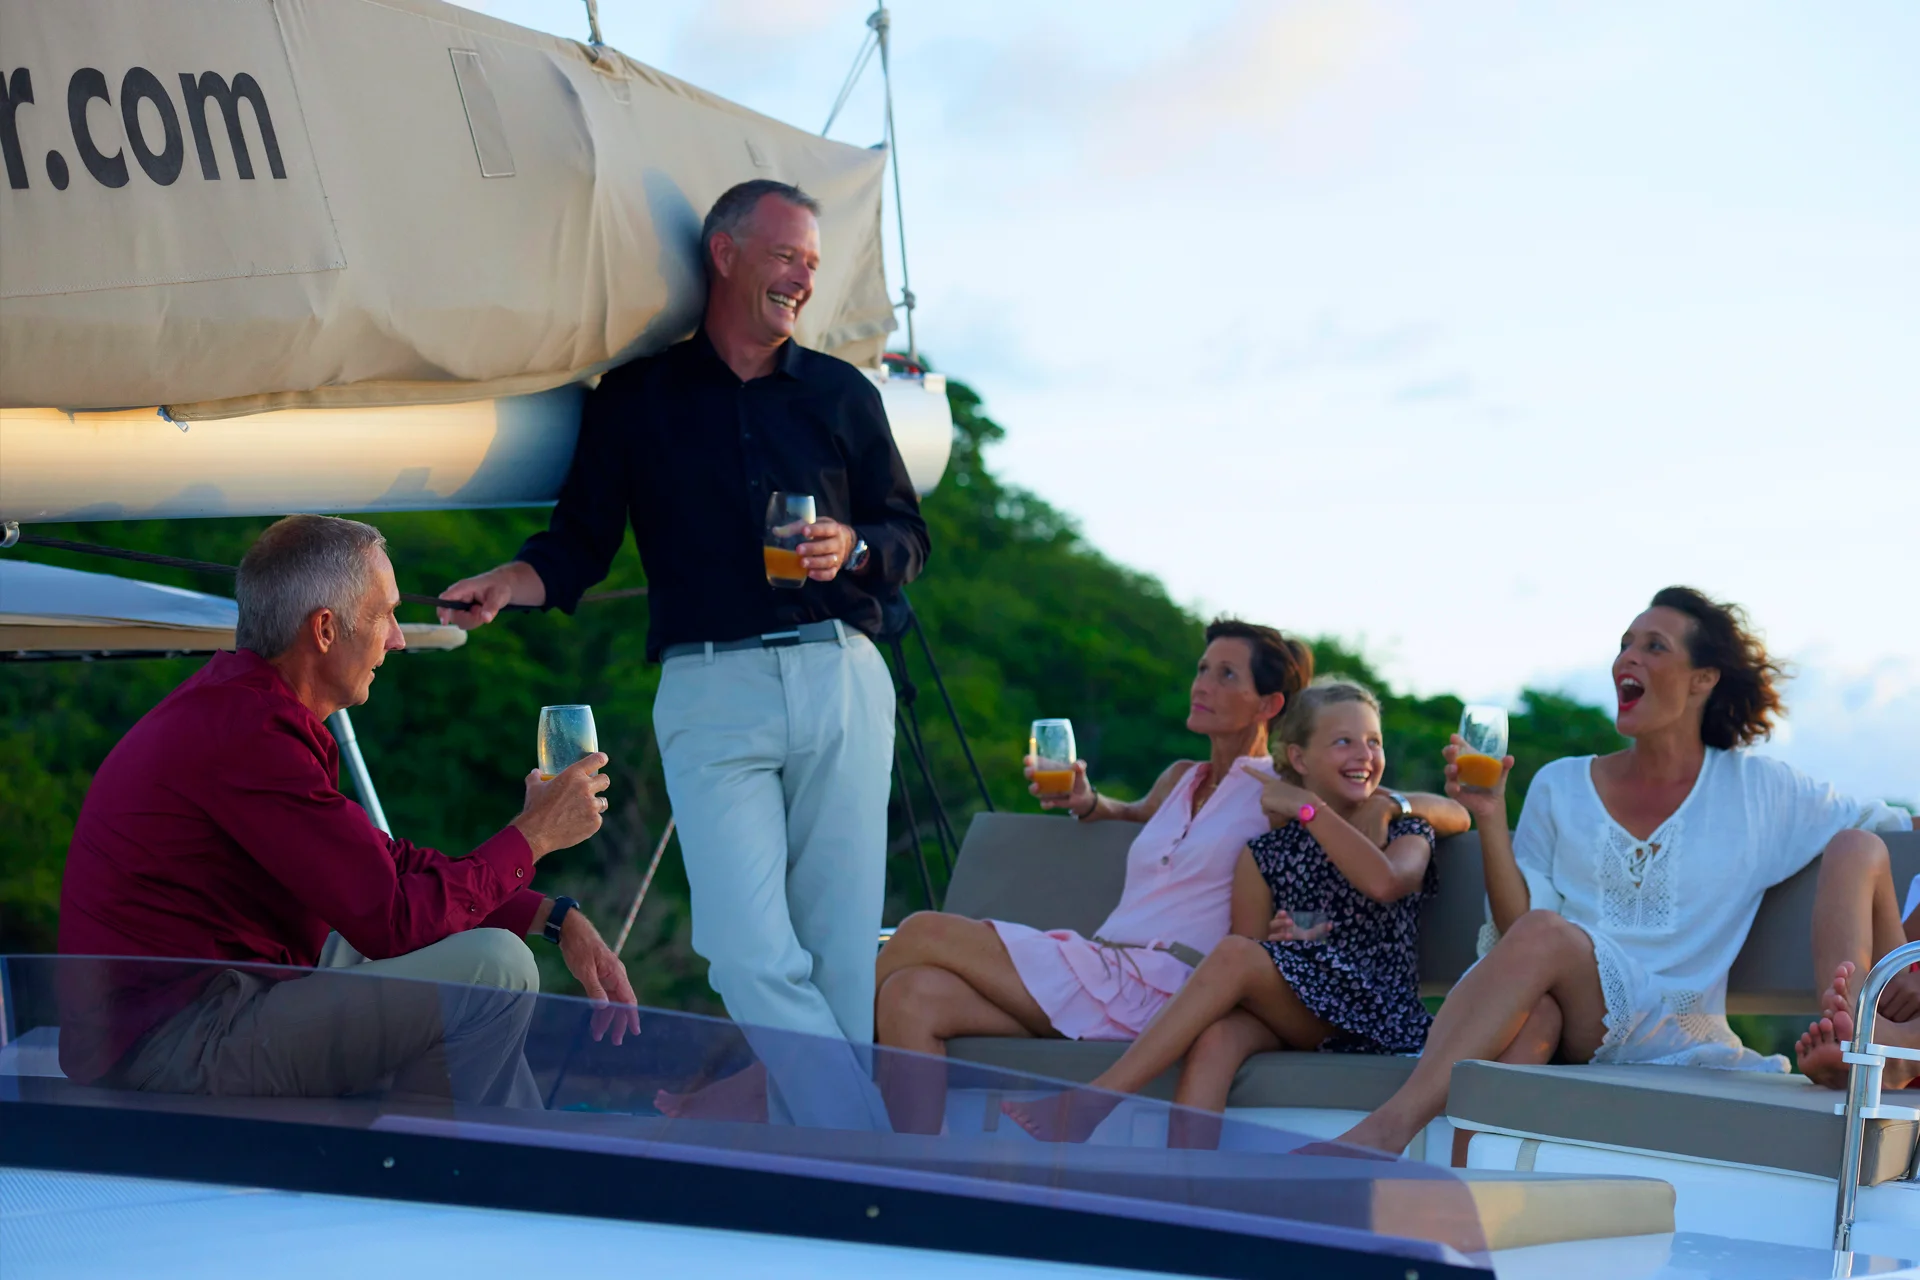 Amici e familiari che si godono il tramonto durante le vacanze su uno yacht charter con equipaggio Premium